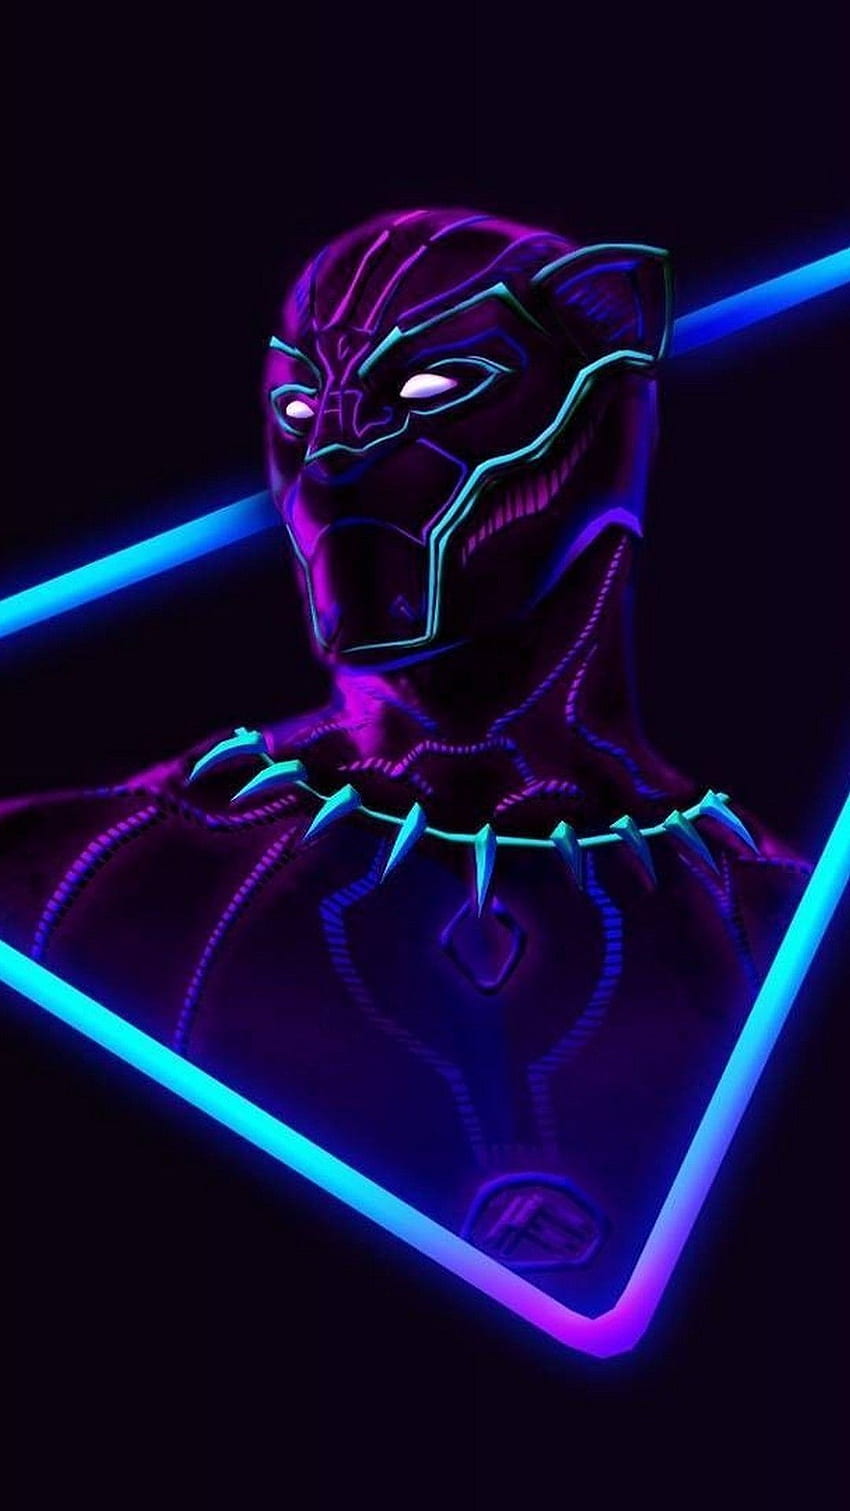 Hình ảnh Thanos đẹp ngầu, mạnh nhất phe phản diện